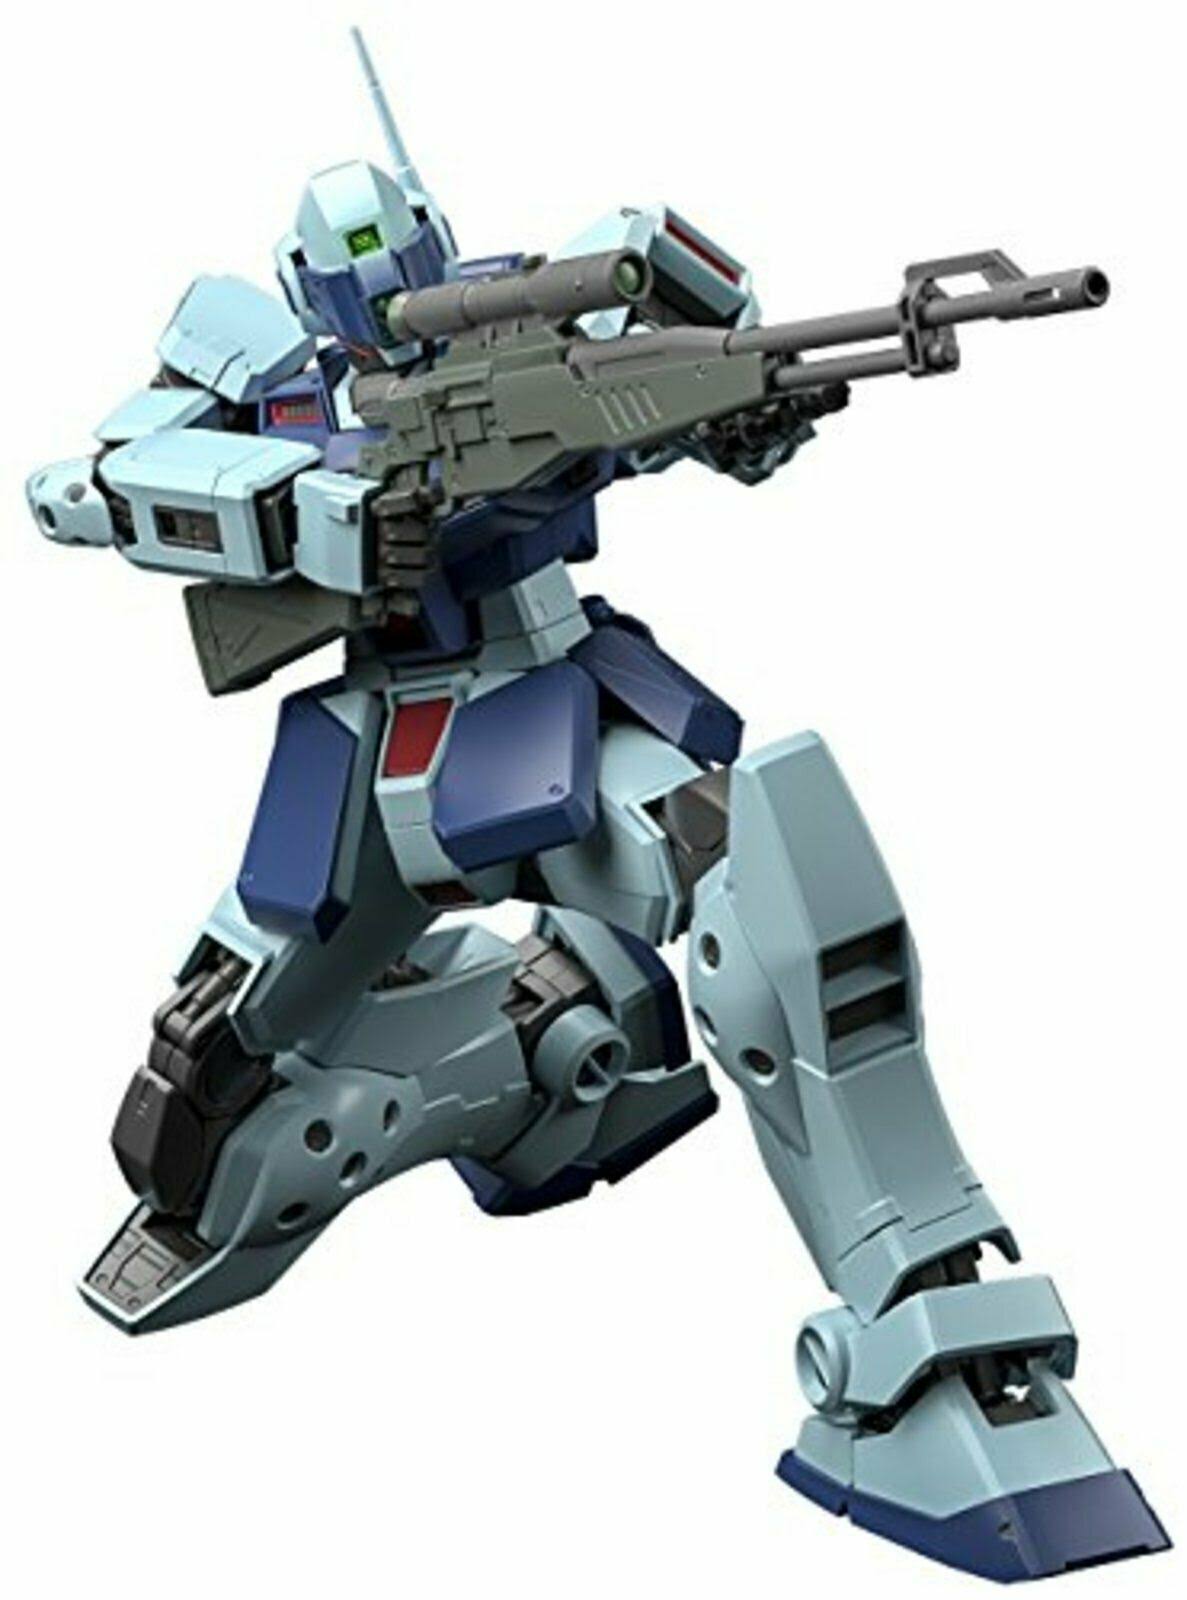 Bandai Gundam Mg Sniper II Mobile Suit Kit - 1/100 Scale